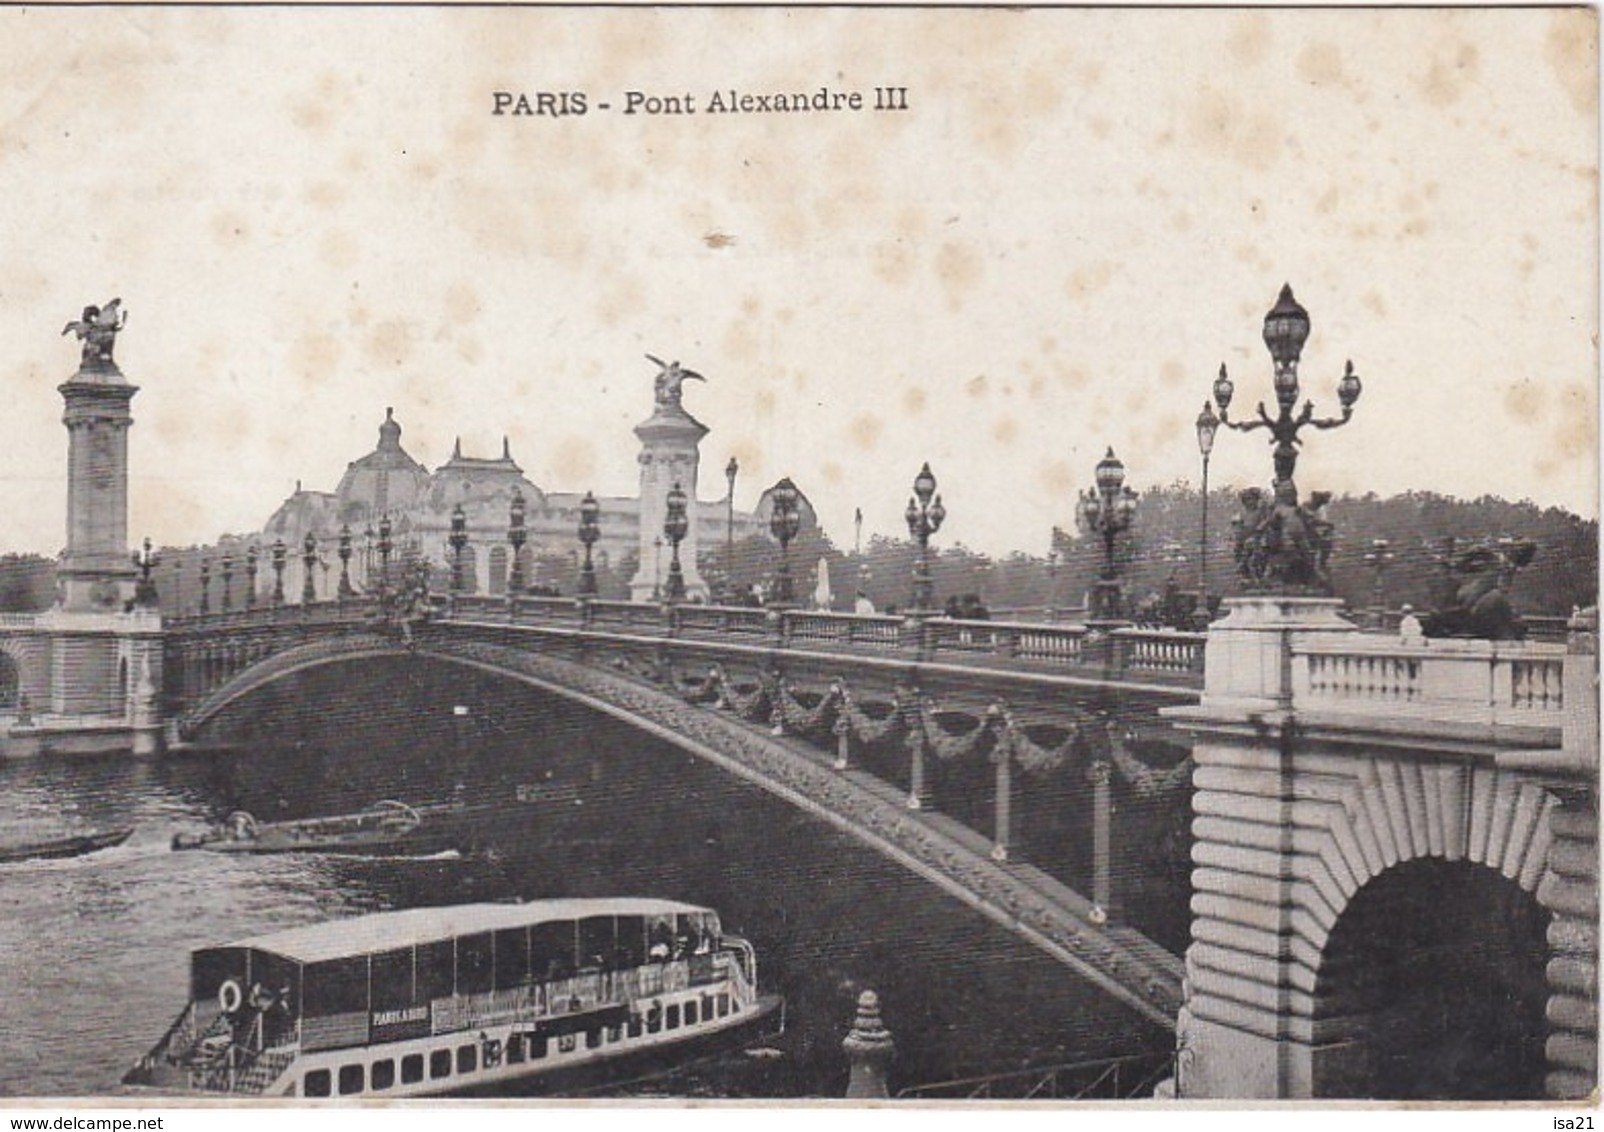 lot de 50 CPA de PARIS toutes scannées: monuments;; Tour Eiffel, Montmartre, ponts; églises, rues, République, etc.